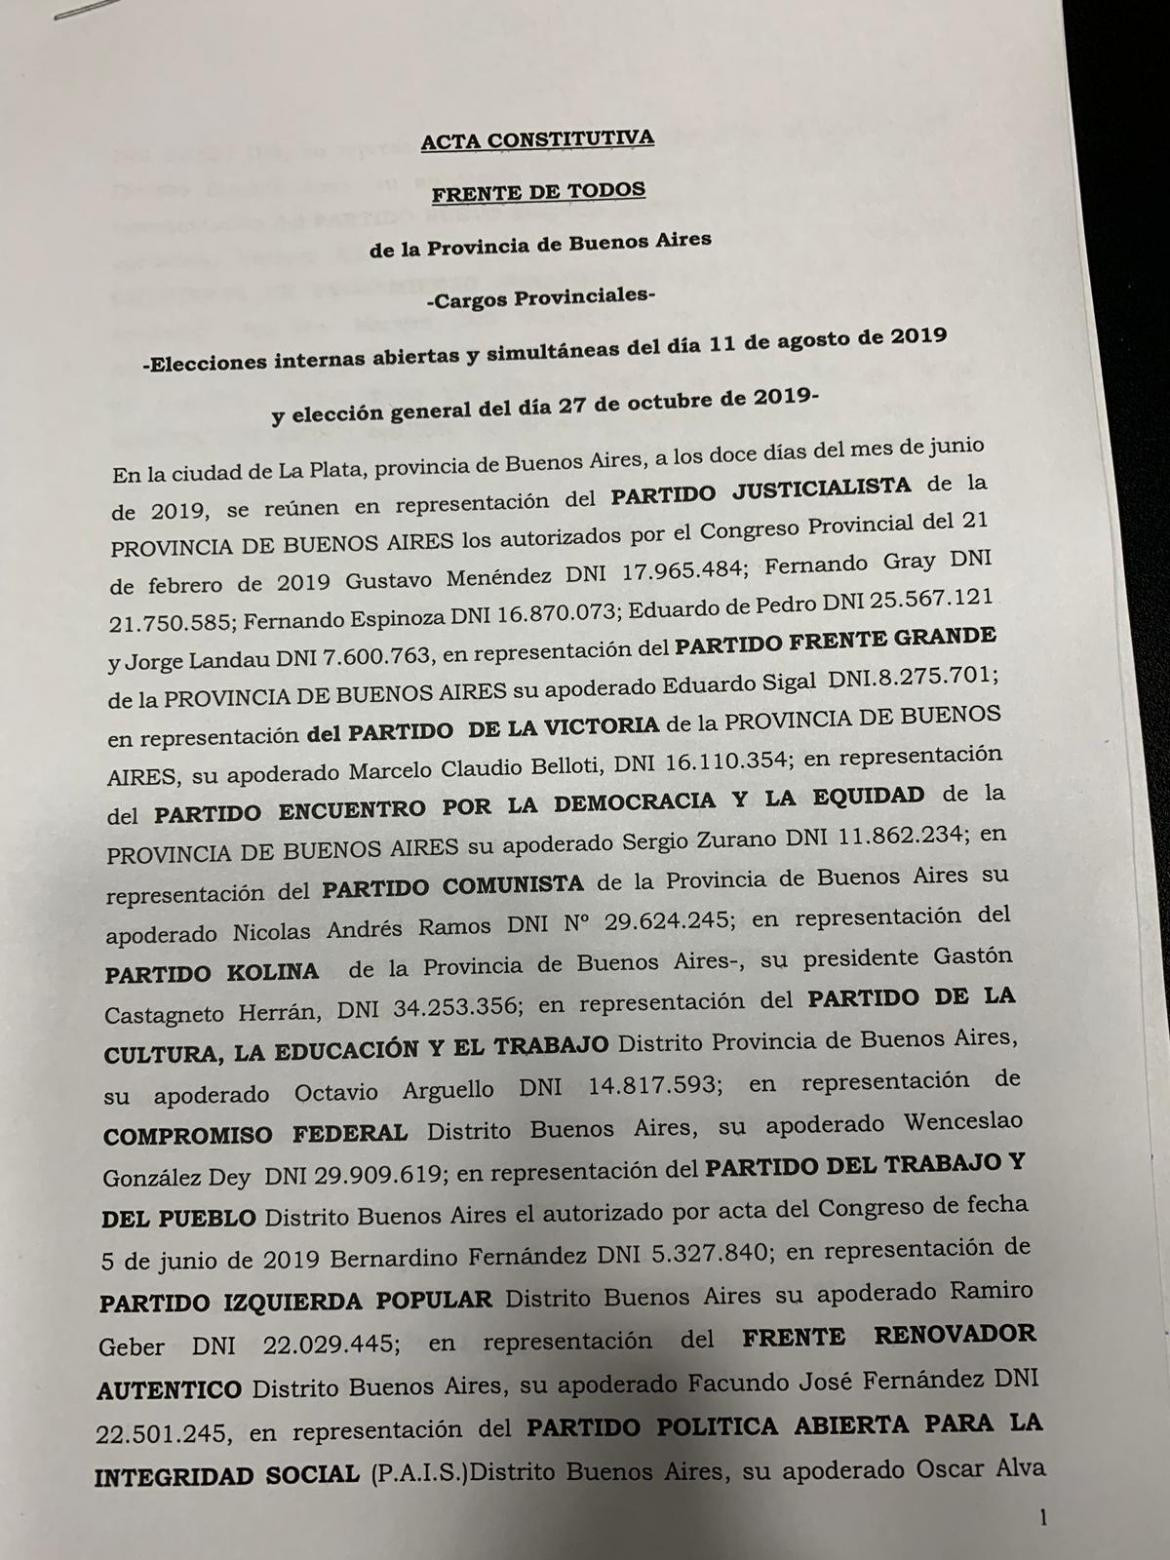 Acuerdo del Frente de Todos en la Provincia de Buenos Aires - Parte 1